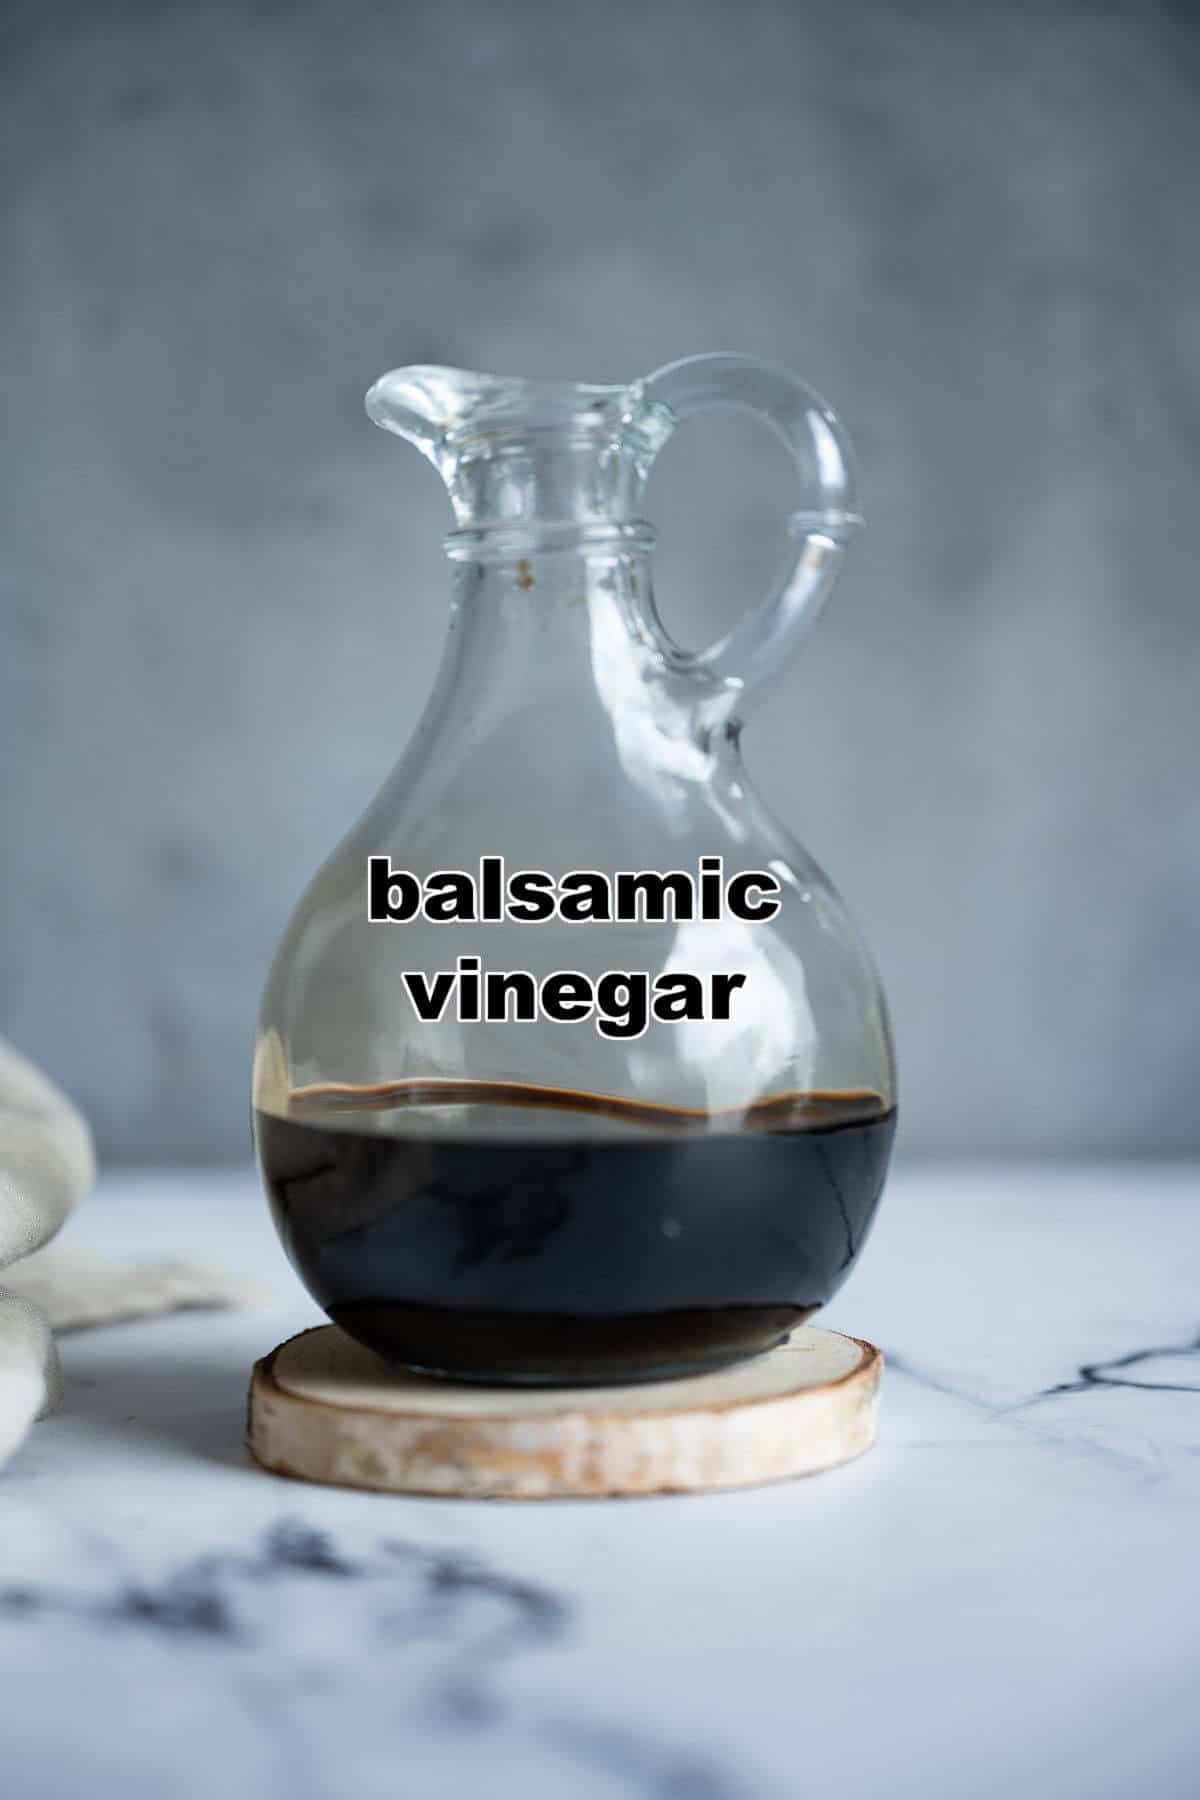 Balsamic vinegar in a cruet.